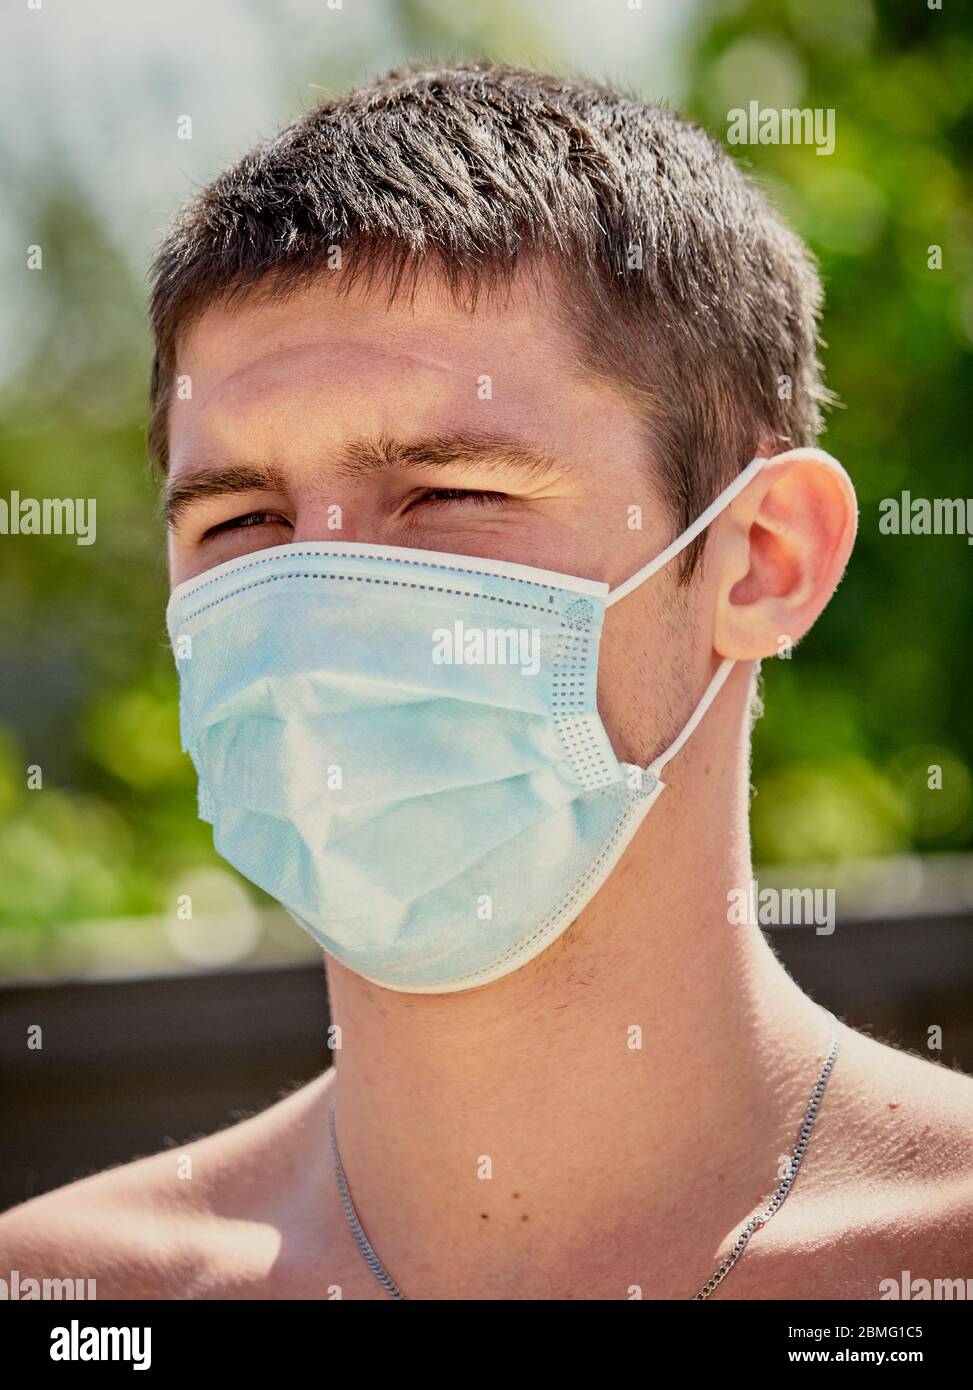 Homme portant un masque médical de protection pendant le verrouillage du coronavirus Banque D'Images